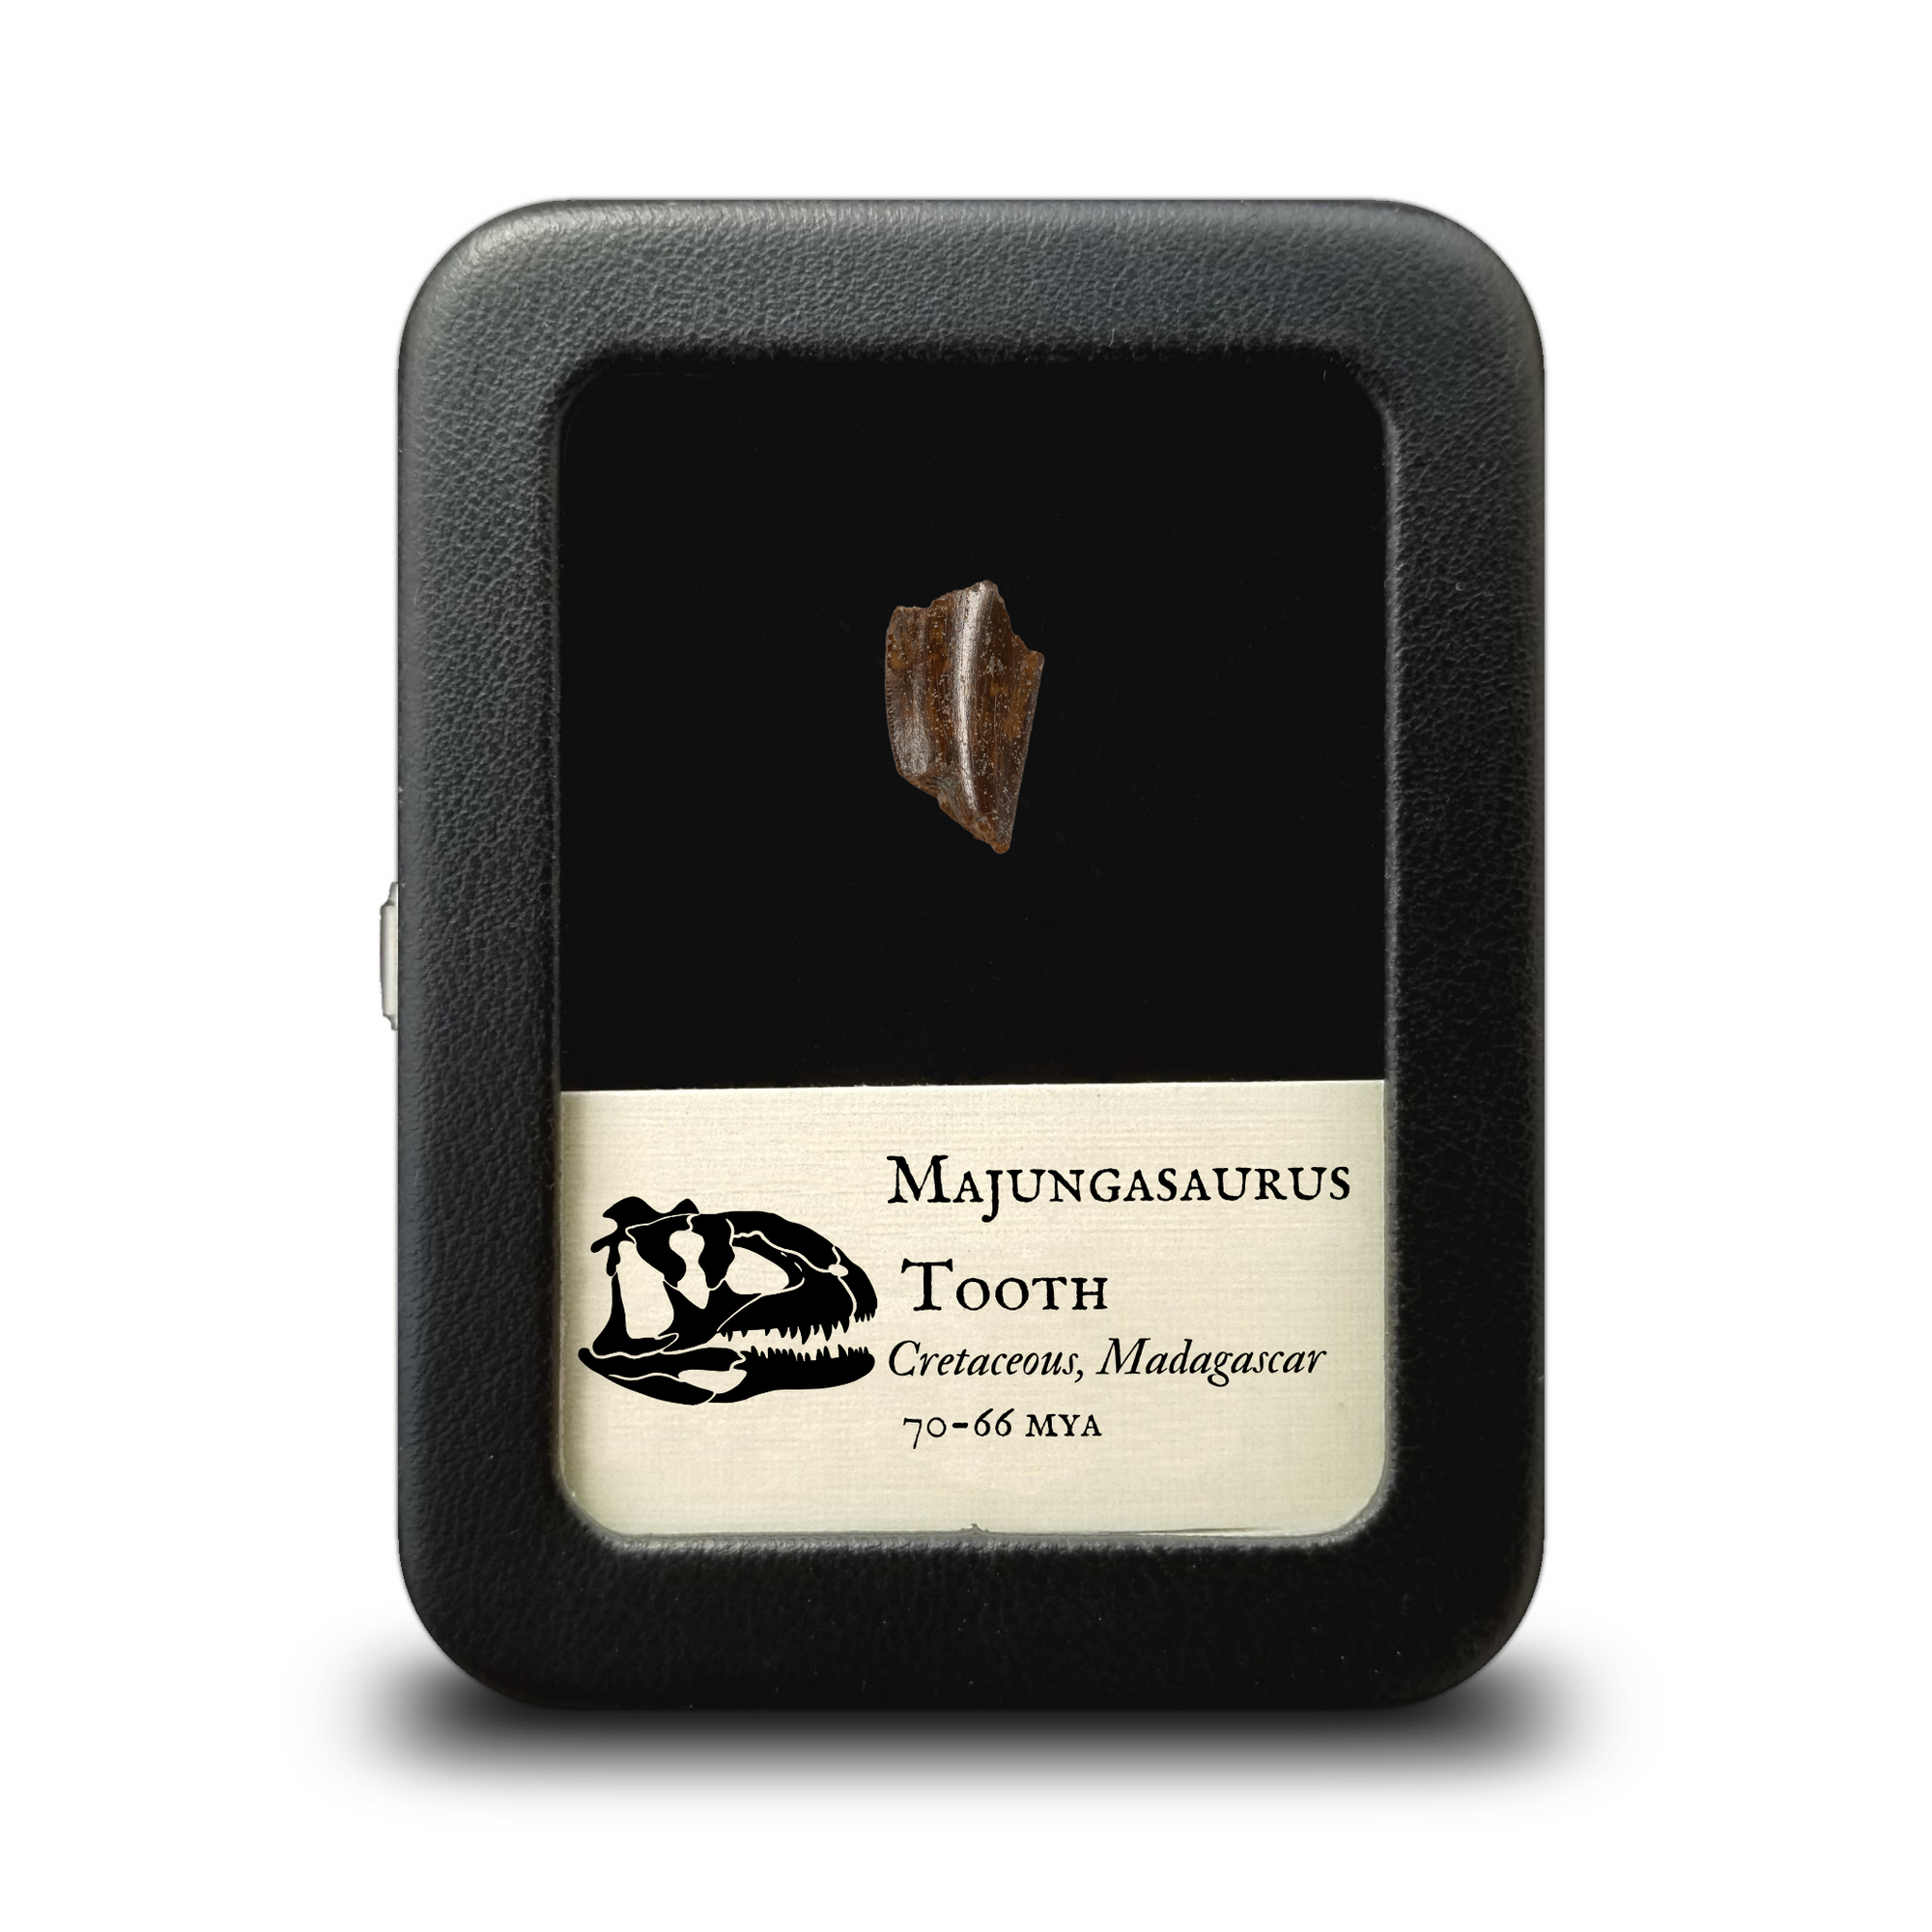 Majungasaurus Tooth 25mm - Cretaceous Period - 70 to 66 MYA - Madagascar